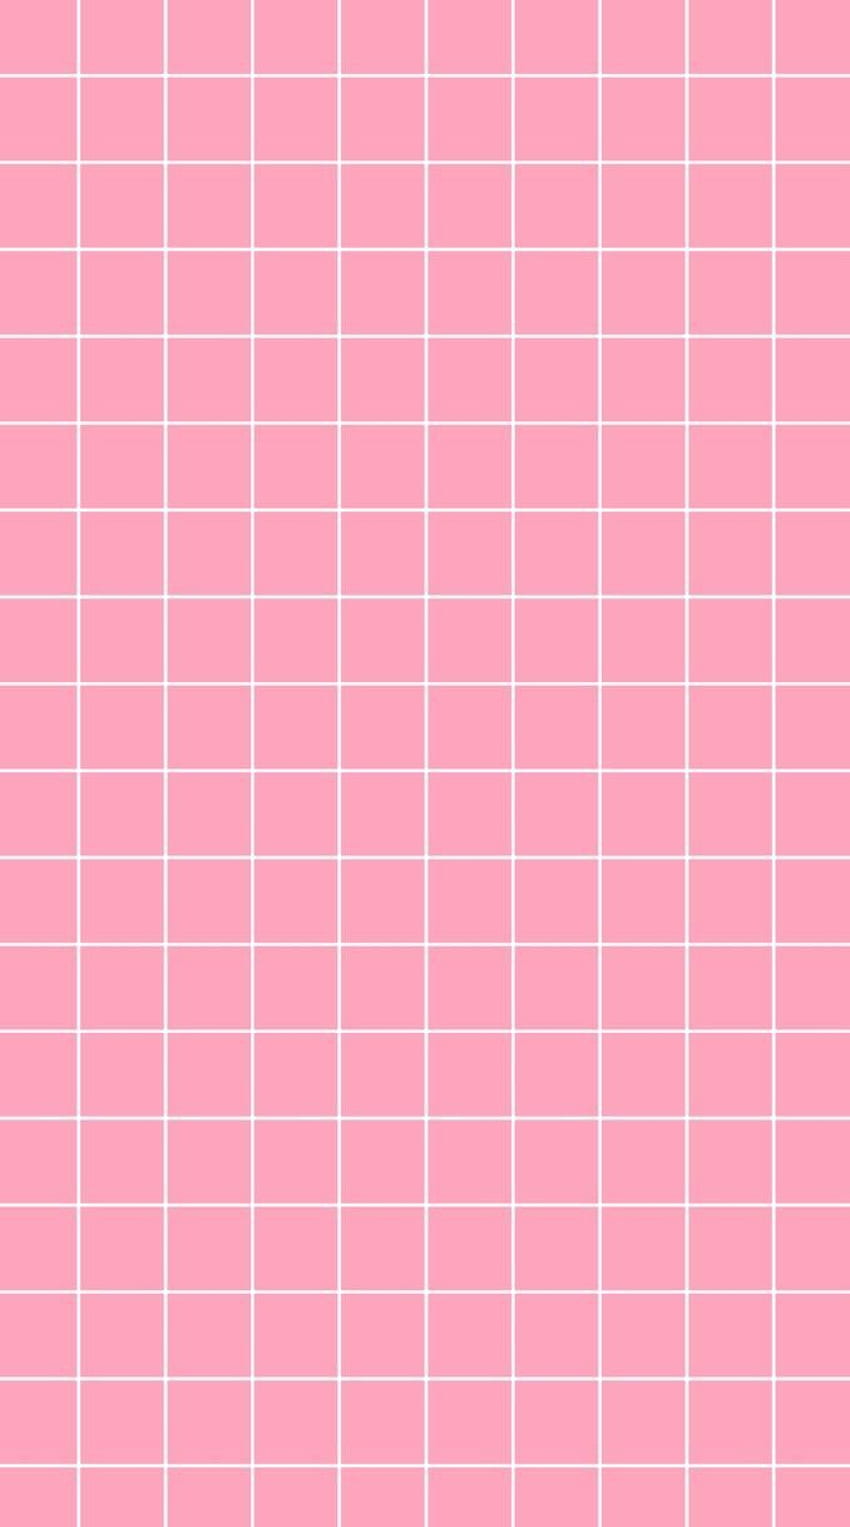 Thiết kế hình nền lưới kết hợp với màu hồng đậm chắc chắn sẽ khiến bạn say mê. Hãy đến và trải nghiệm tỉ mỉ từng nét vẽ chi tiết trên hình nền độc đáo này.